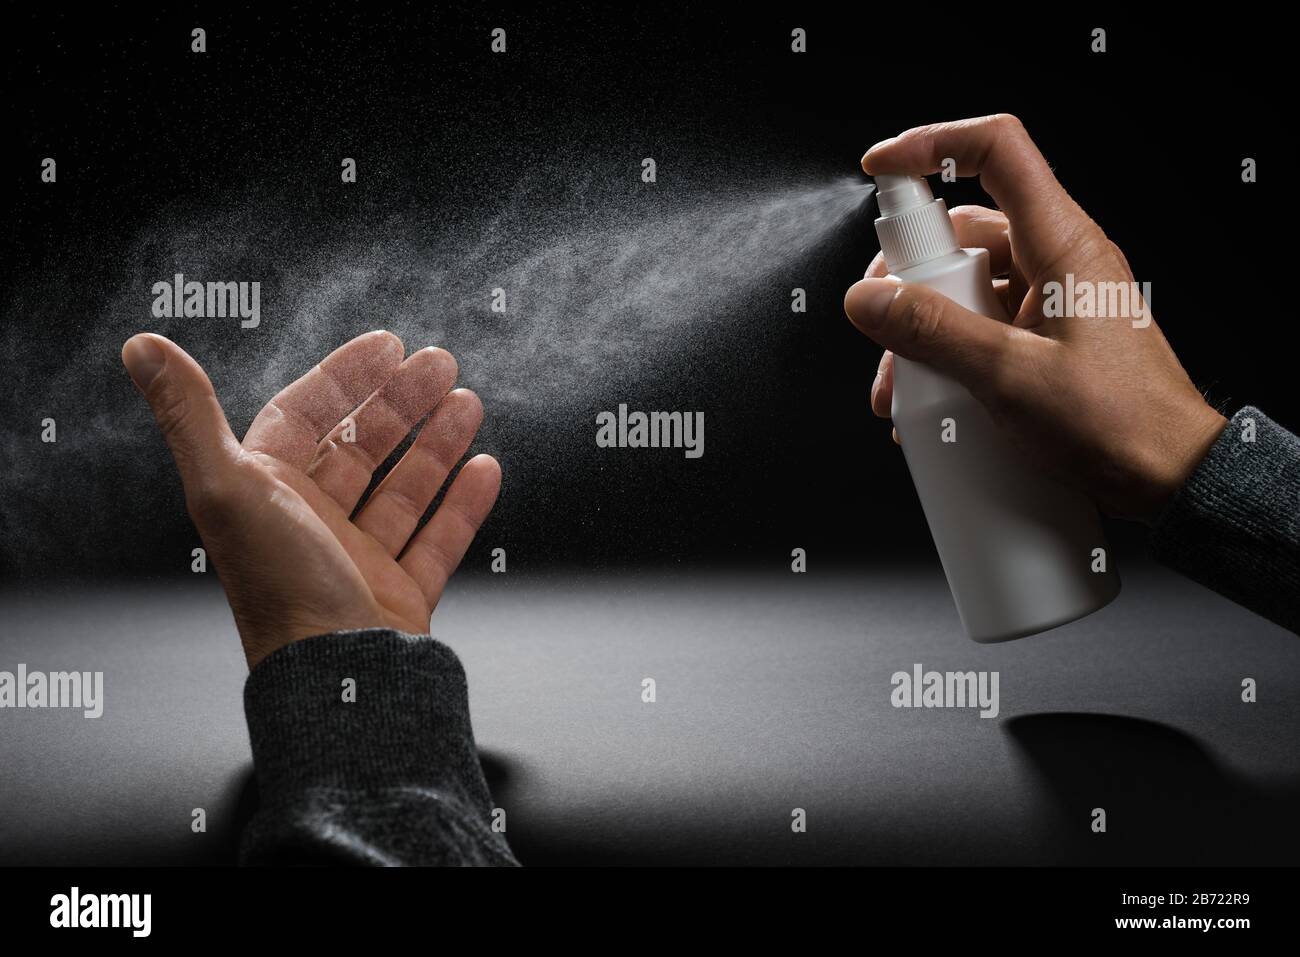 Sprühen auf Hand Desinfektion Flaschen-Spray Hände und Hautsterilisation  Antisepsis Stockfotografie - Alamy